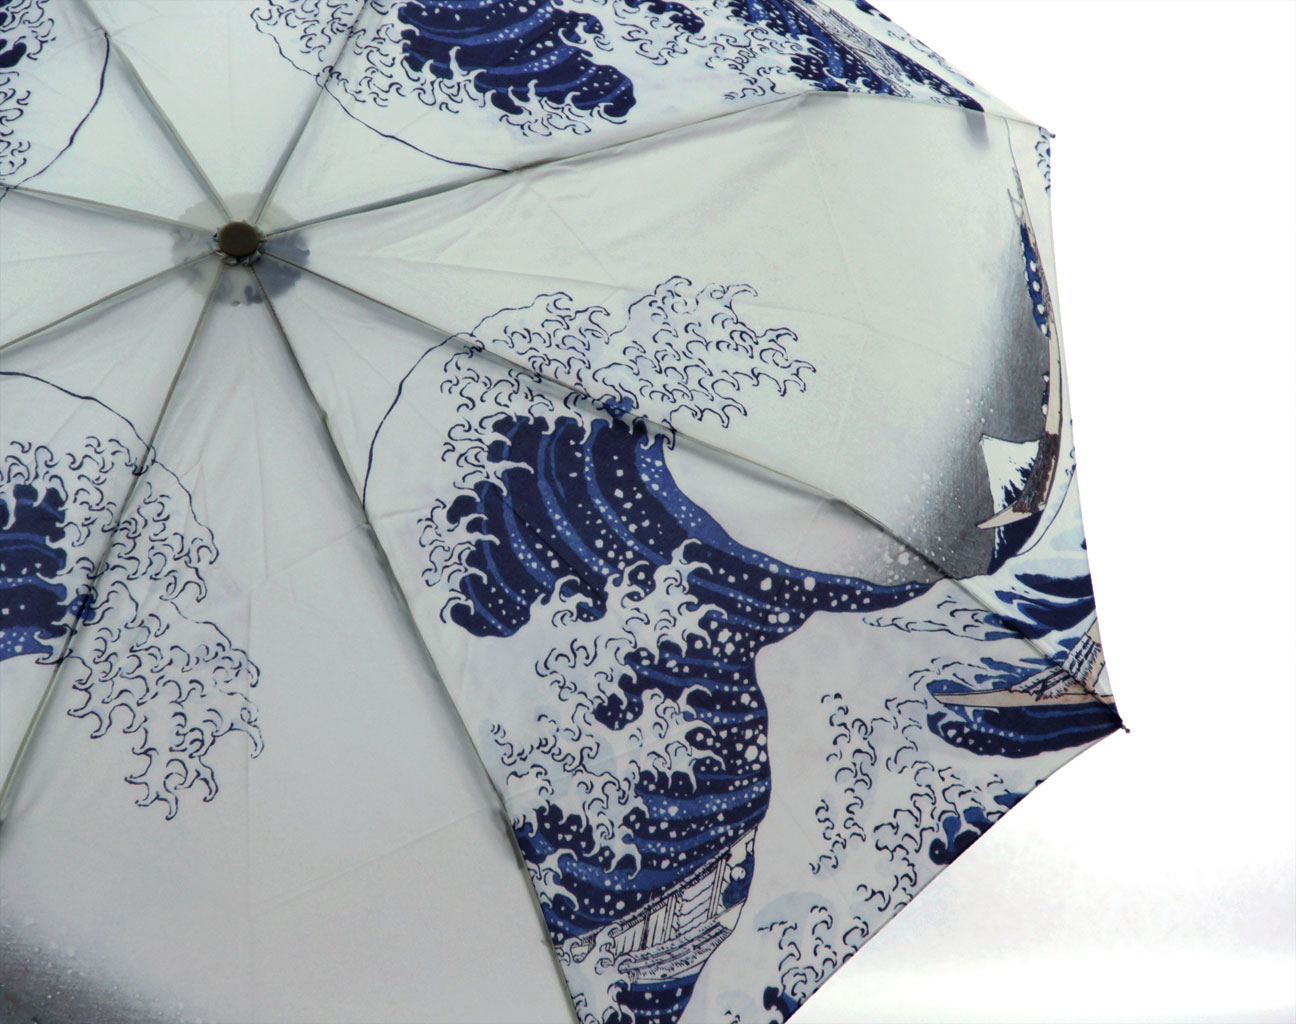 Mount fuji custom print umbrella